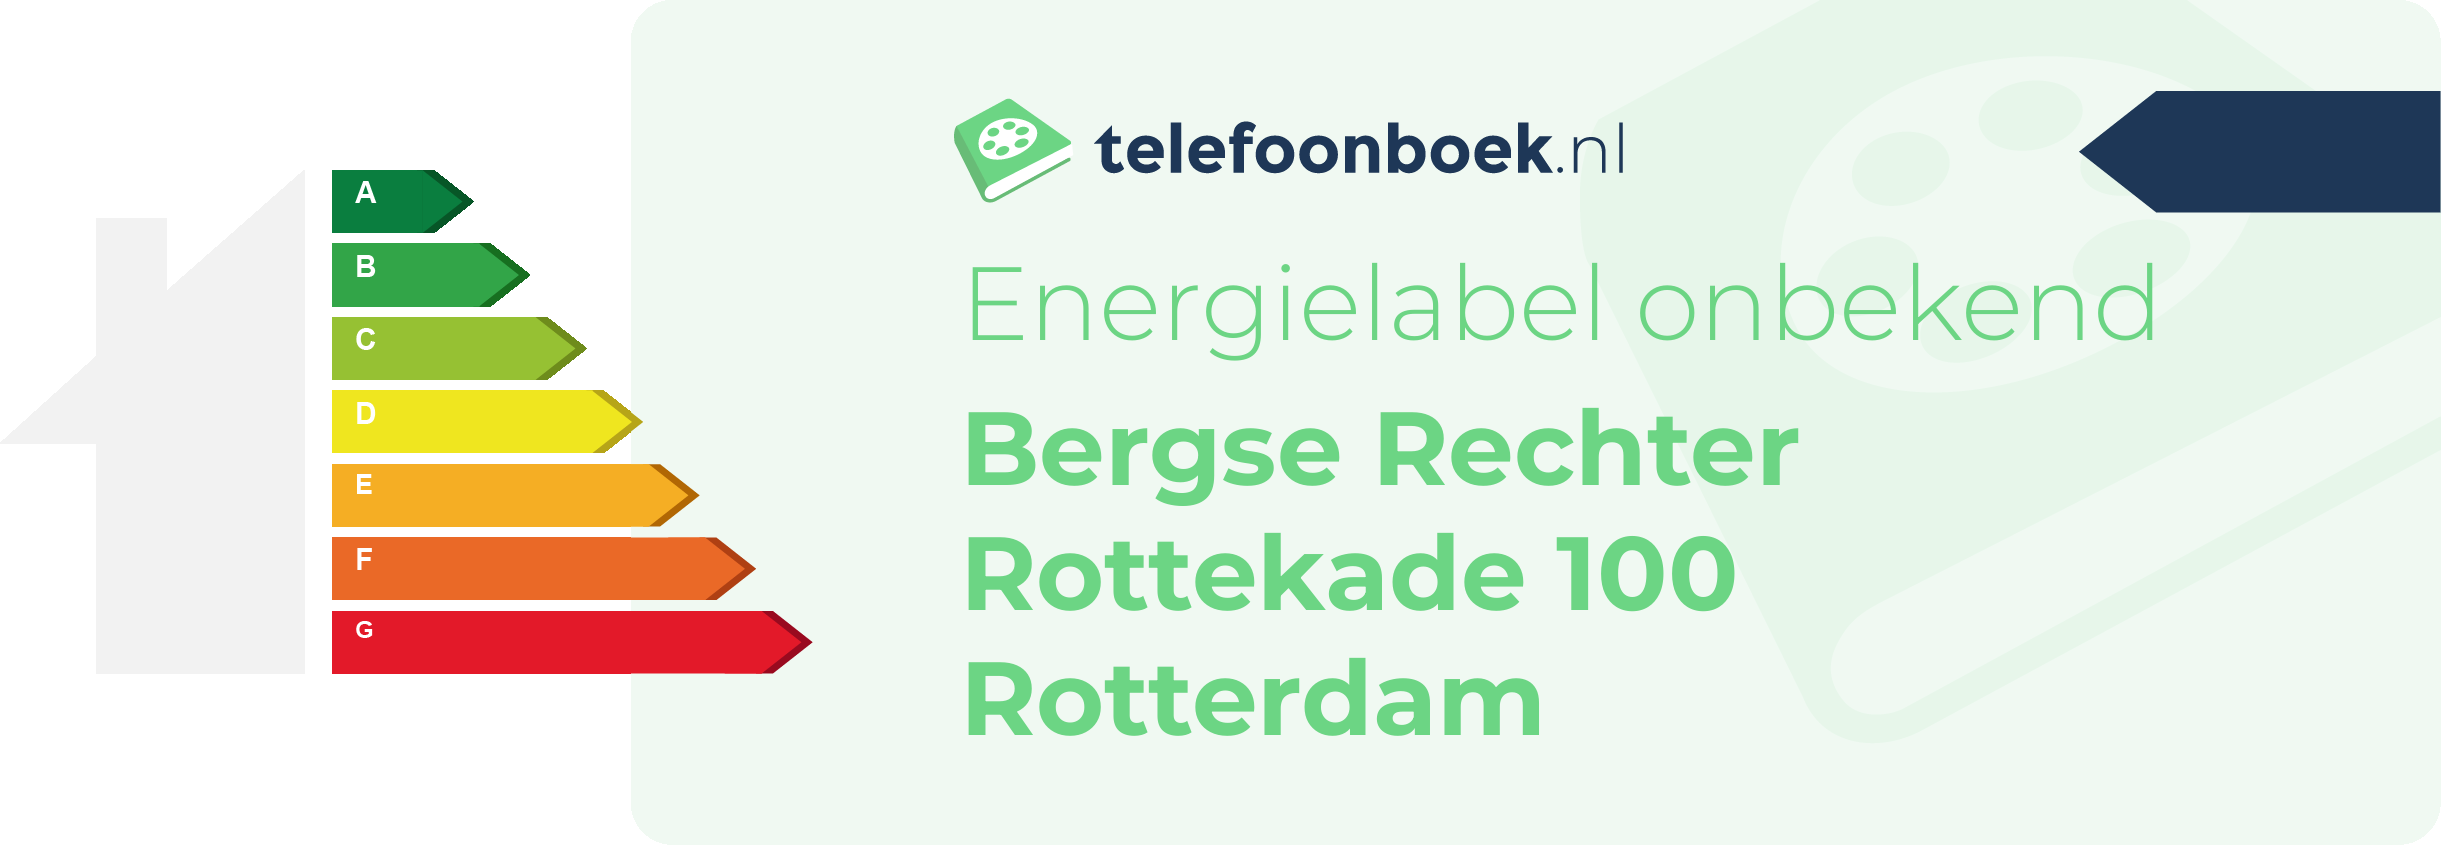 Energielabel Bergse Rechter Rottekade 100 Rotterdam